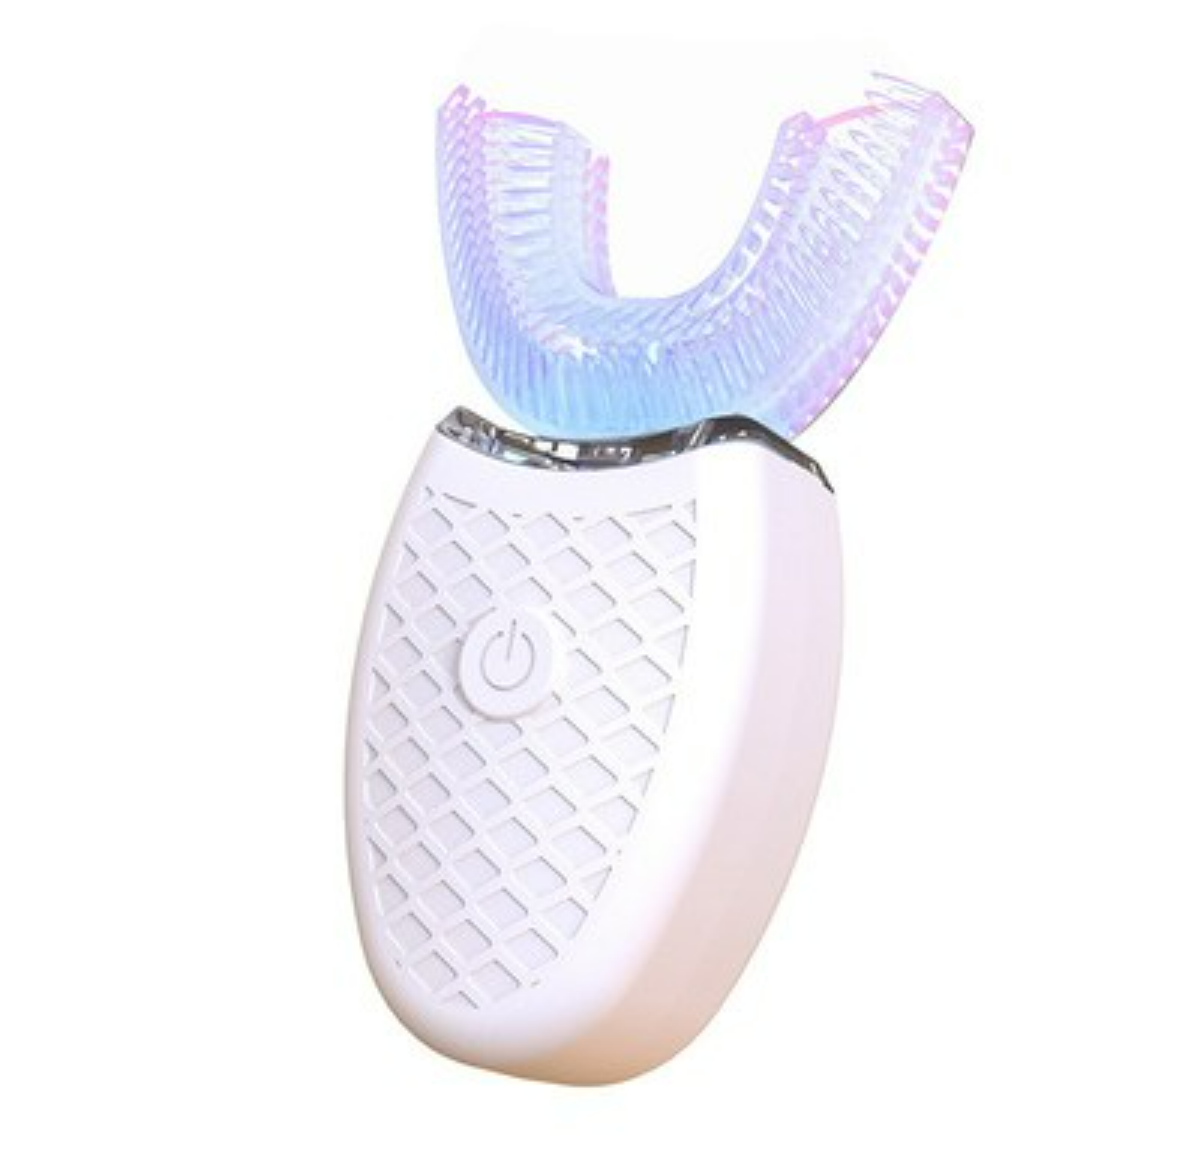 自動電動歯ブラシ│歯のホワイトニング・水漏れ防止・低ノイズ・360°歯面清掃・全自動